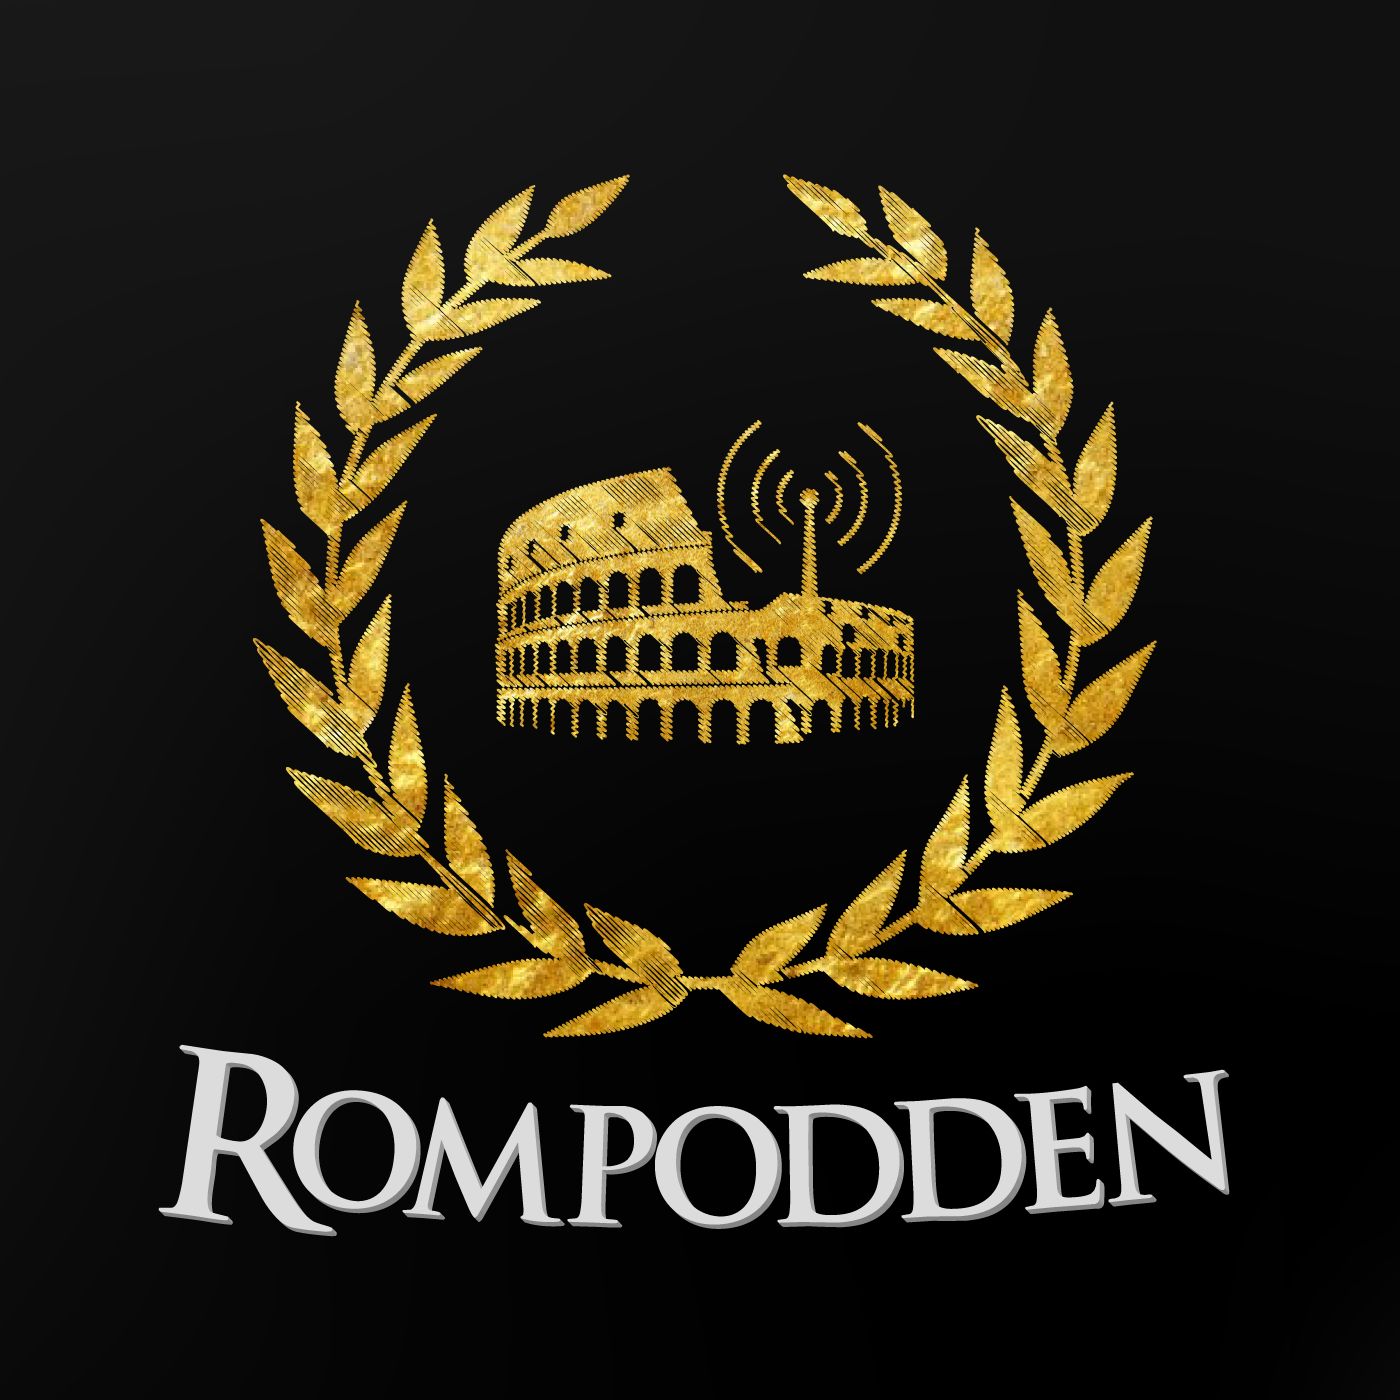 Rompodden